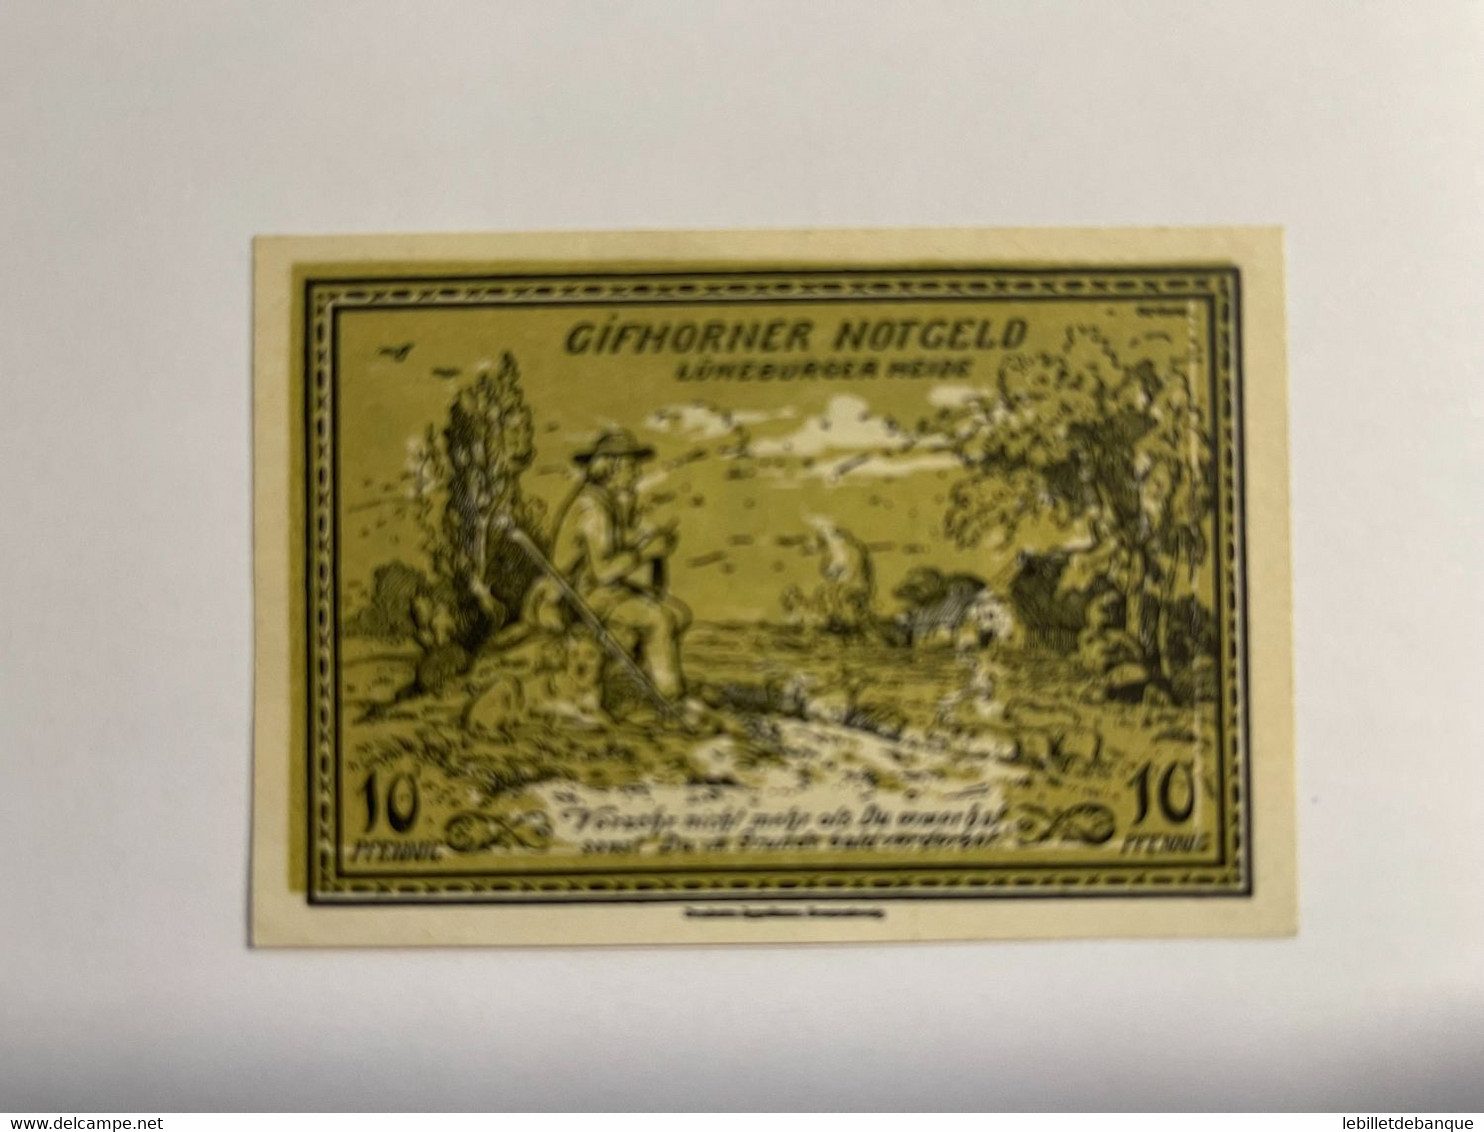 Allemagne Notgeld Gifhorn 10 Pfennig - Sammlungen